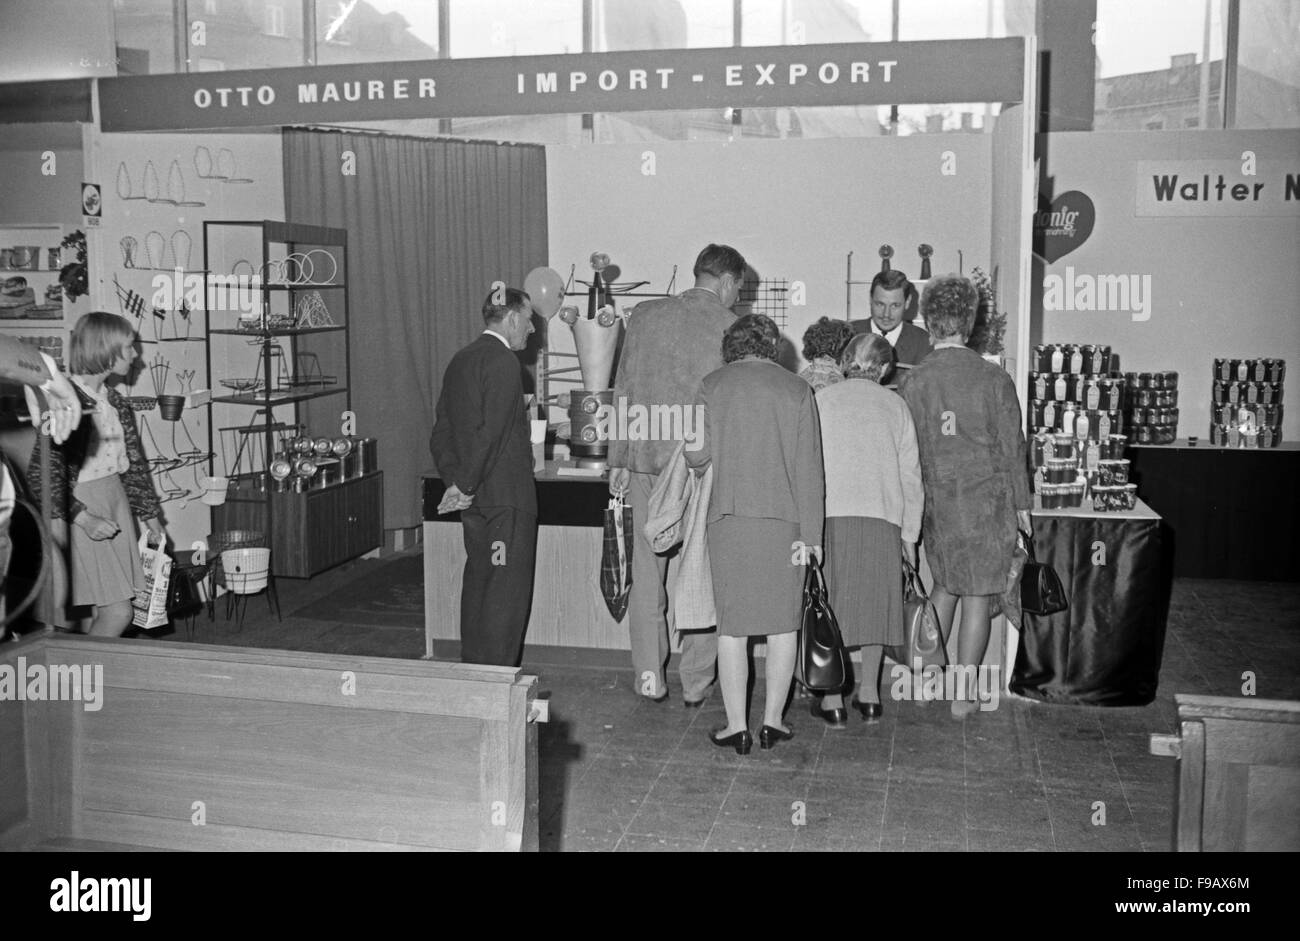 Messestand der Otto Maurer Import Export Handelsgesellschaft auf einer Hausmesse in München, Deutschland 1960er Jahre. Booth of Otto Maurer's Import and Export company at a tradeshow in Munich, Germany 1960s. 24x36swNeg311 Stock Photo